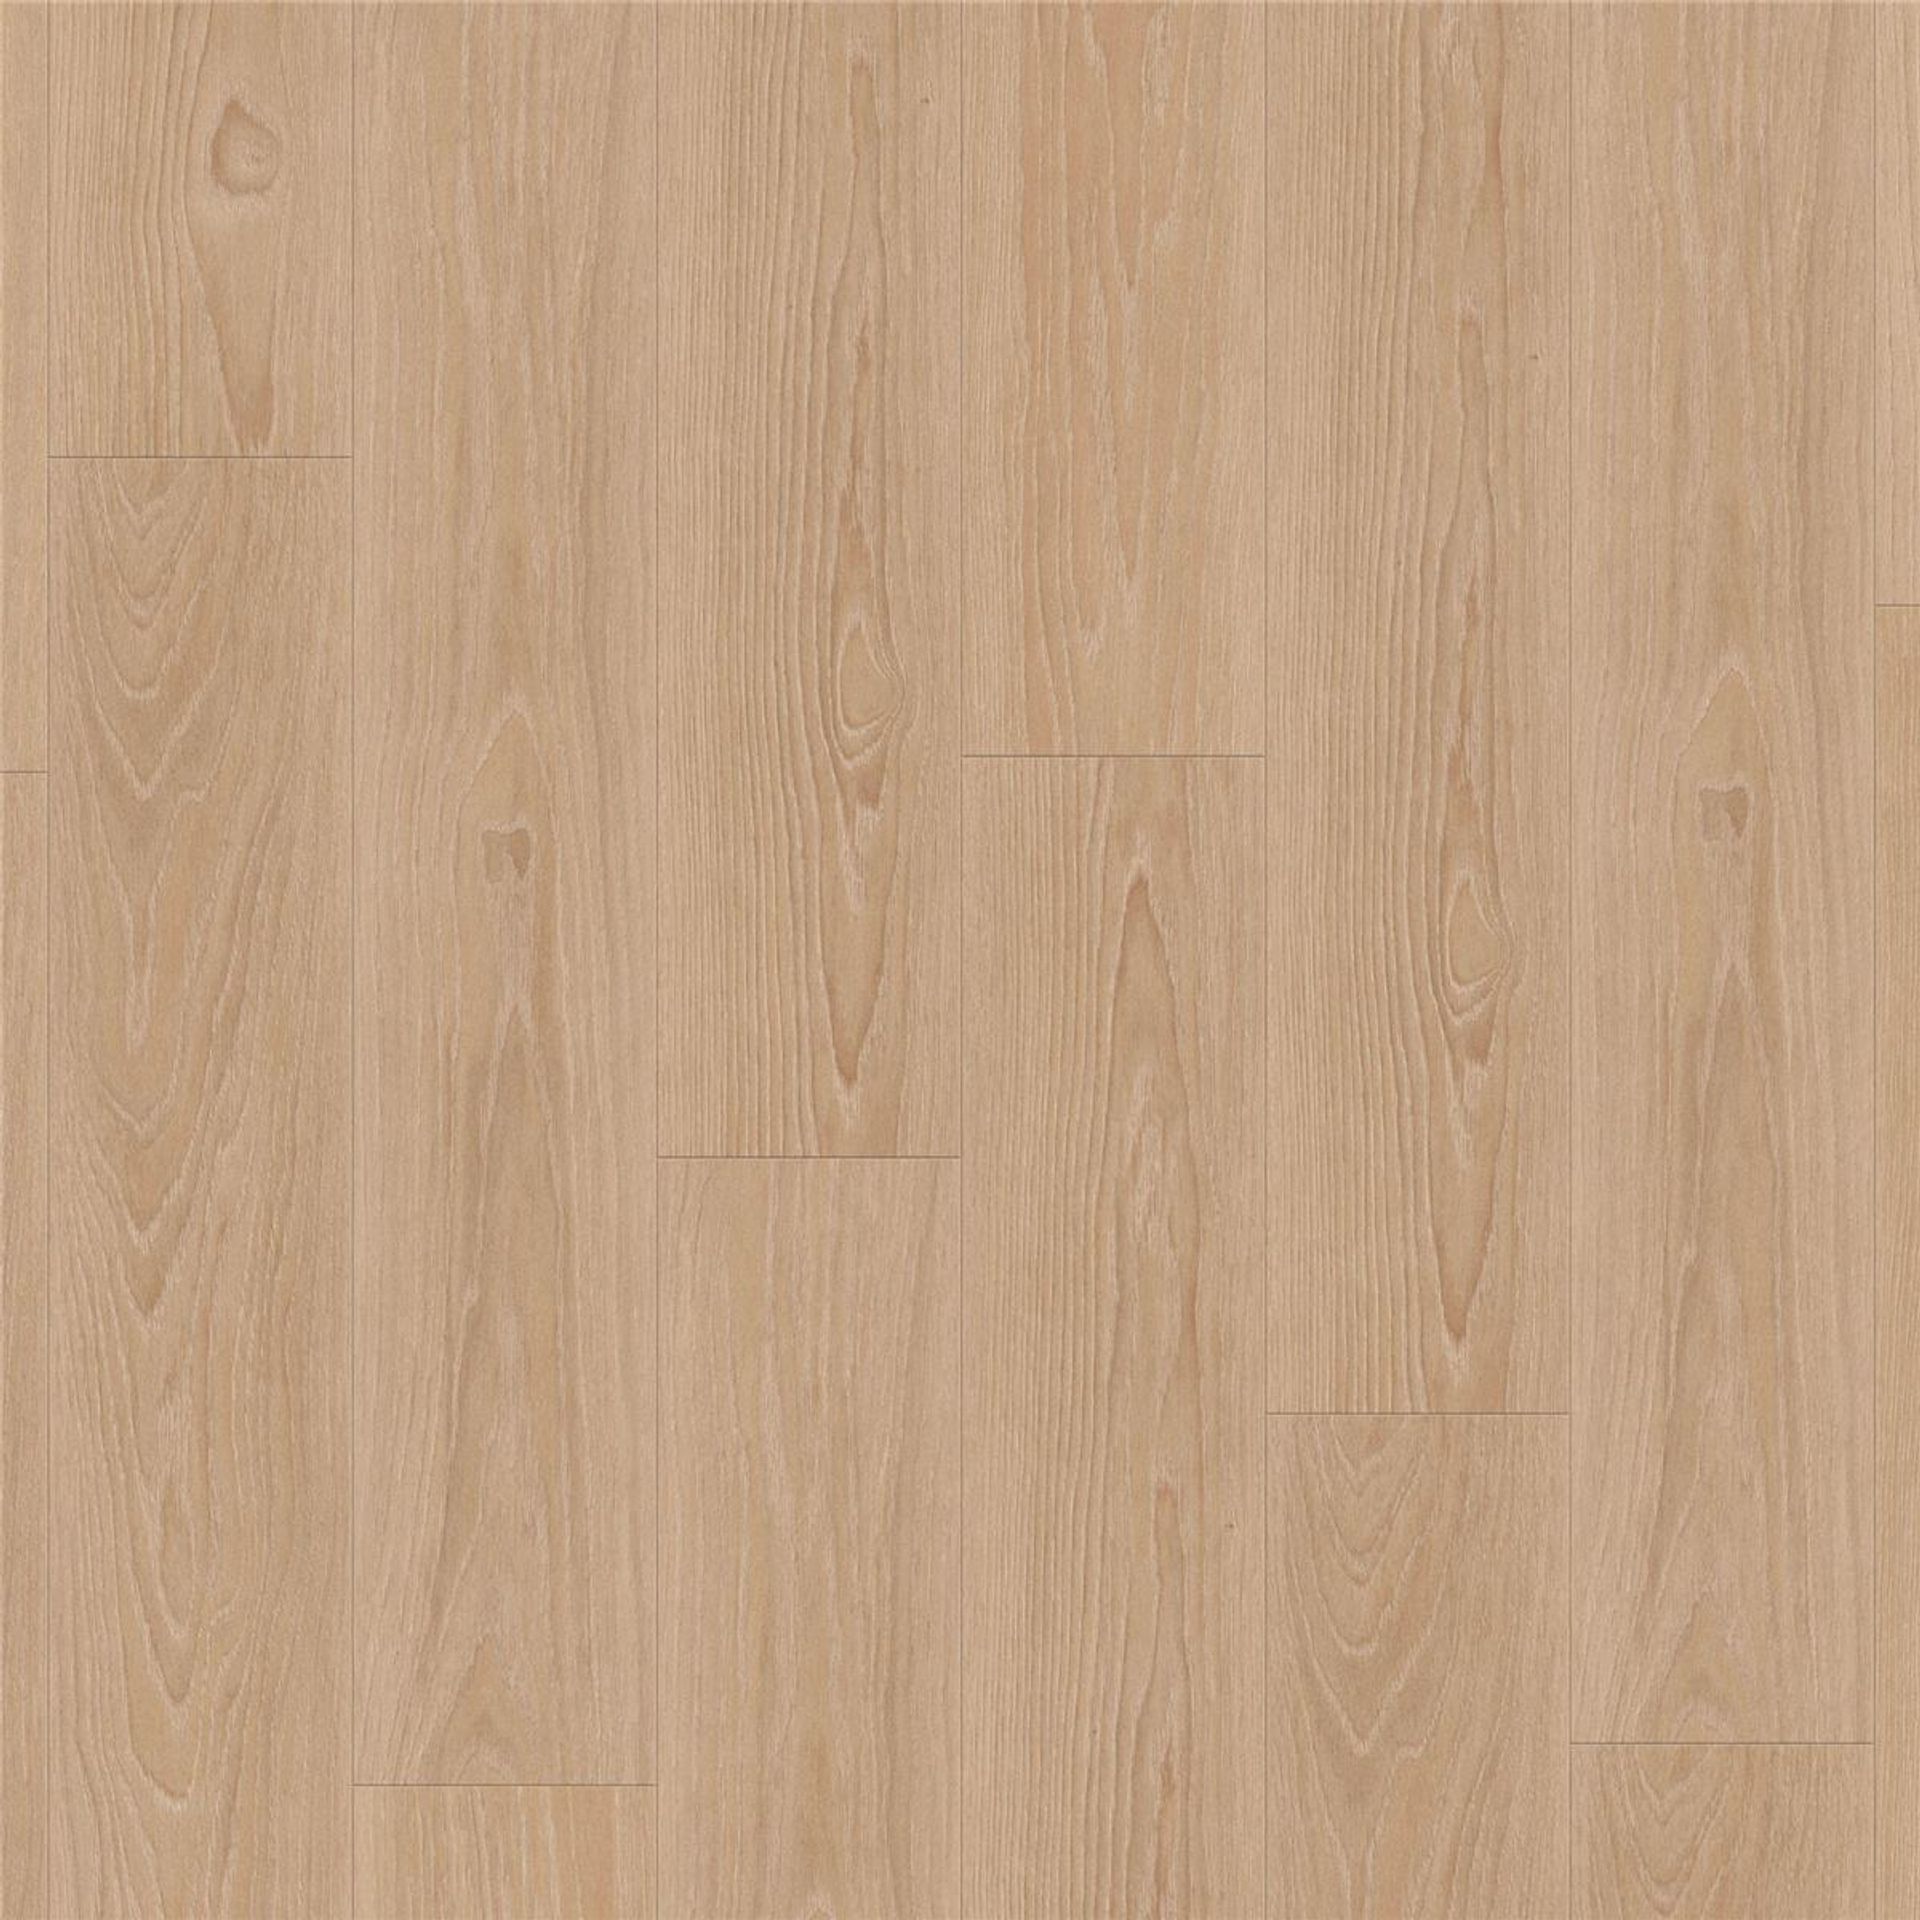 Designboden AUTHENTICS-Pearl Oak-Candis Planke 121,1 cm x 19,05 cm - Nutzschichtdicke 0,55 mm